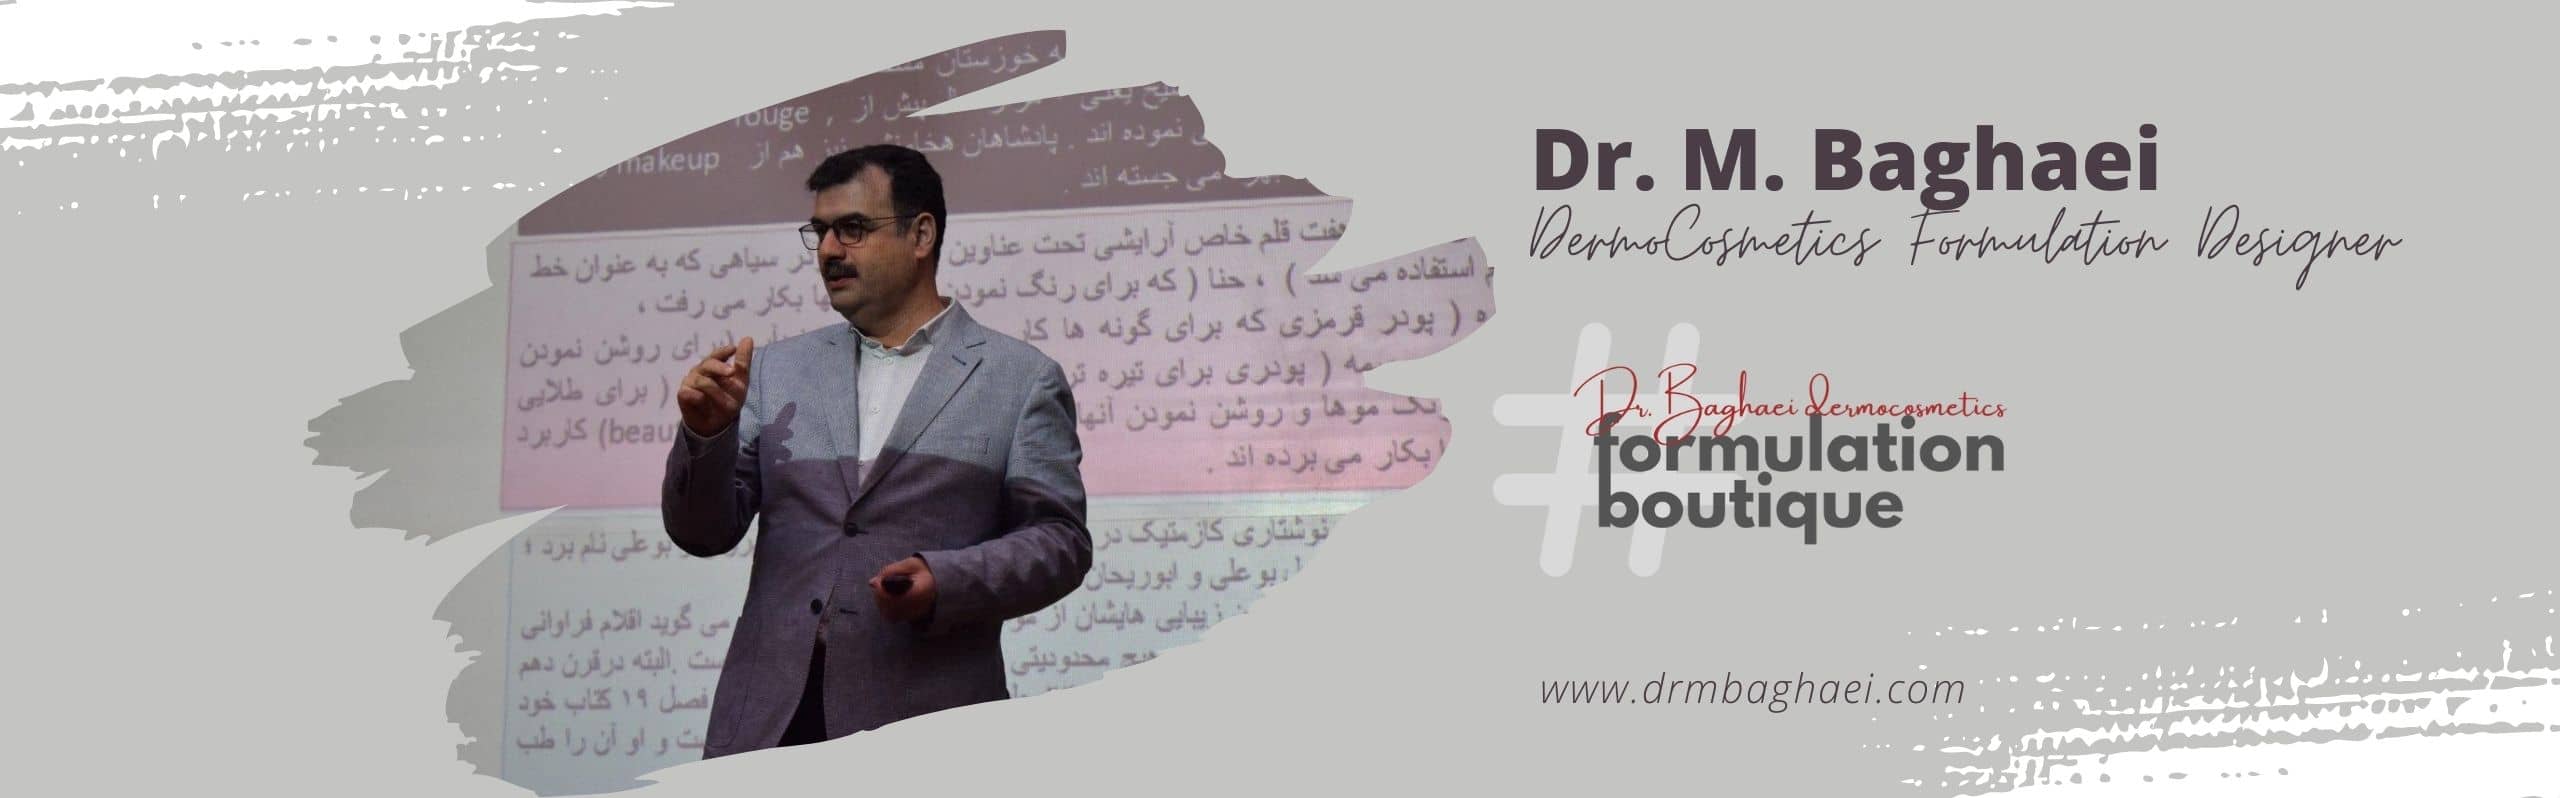 Dr. M. Baghaei 1